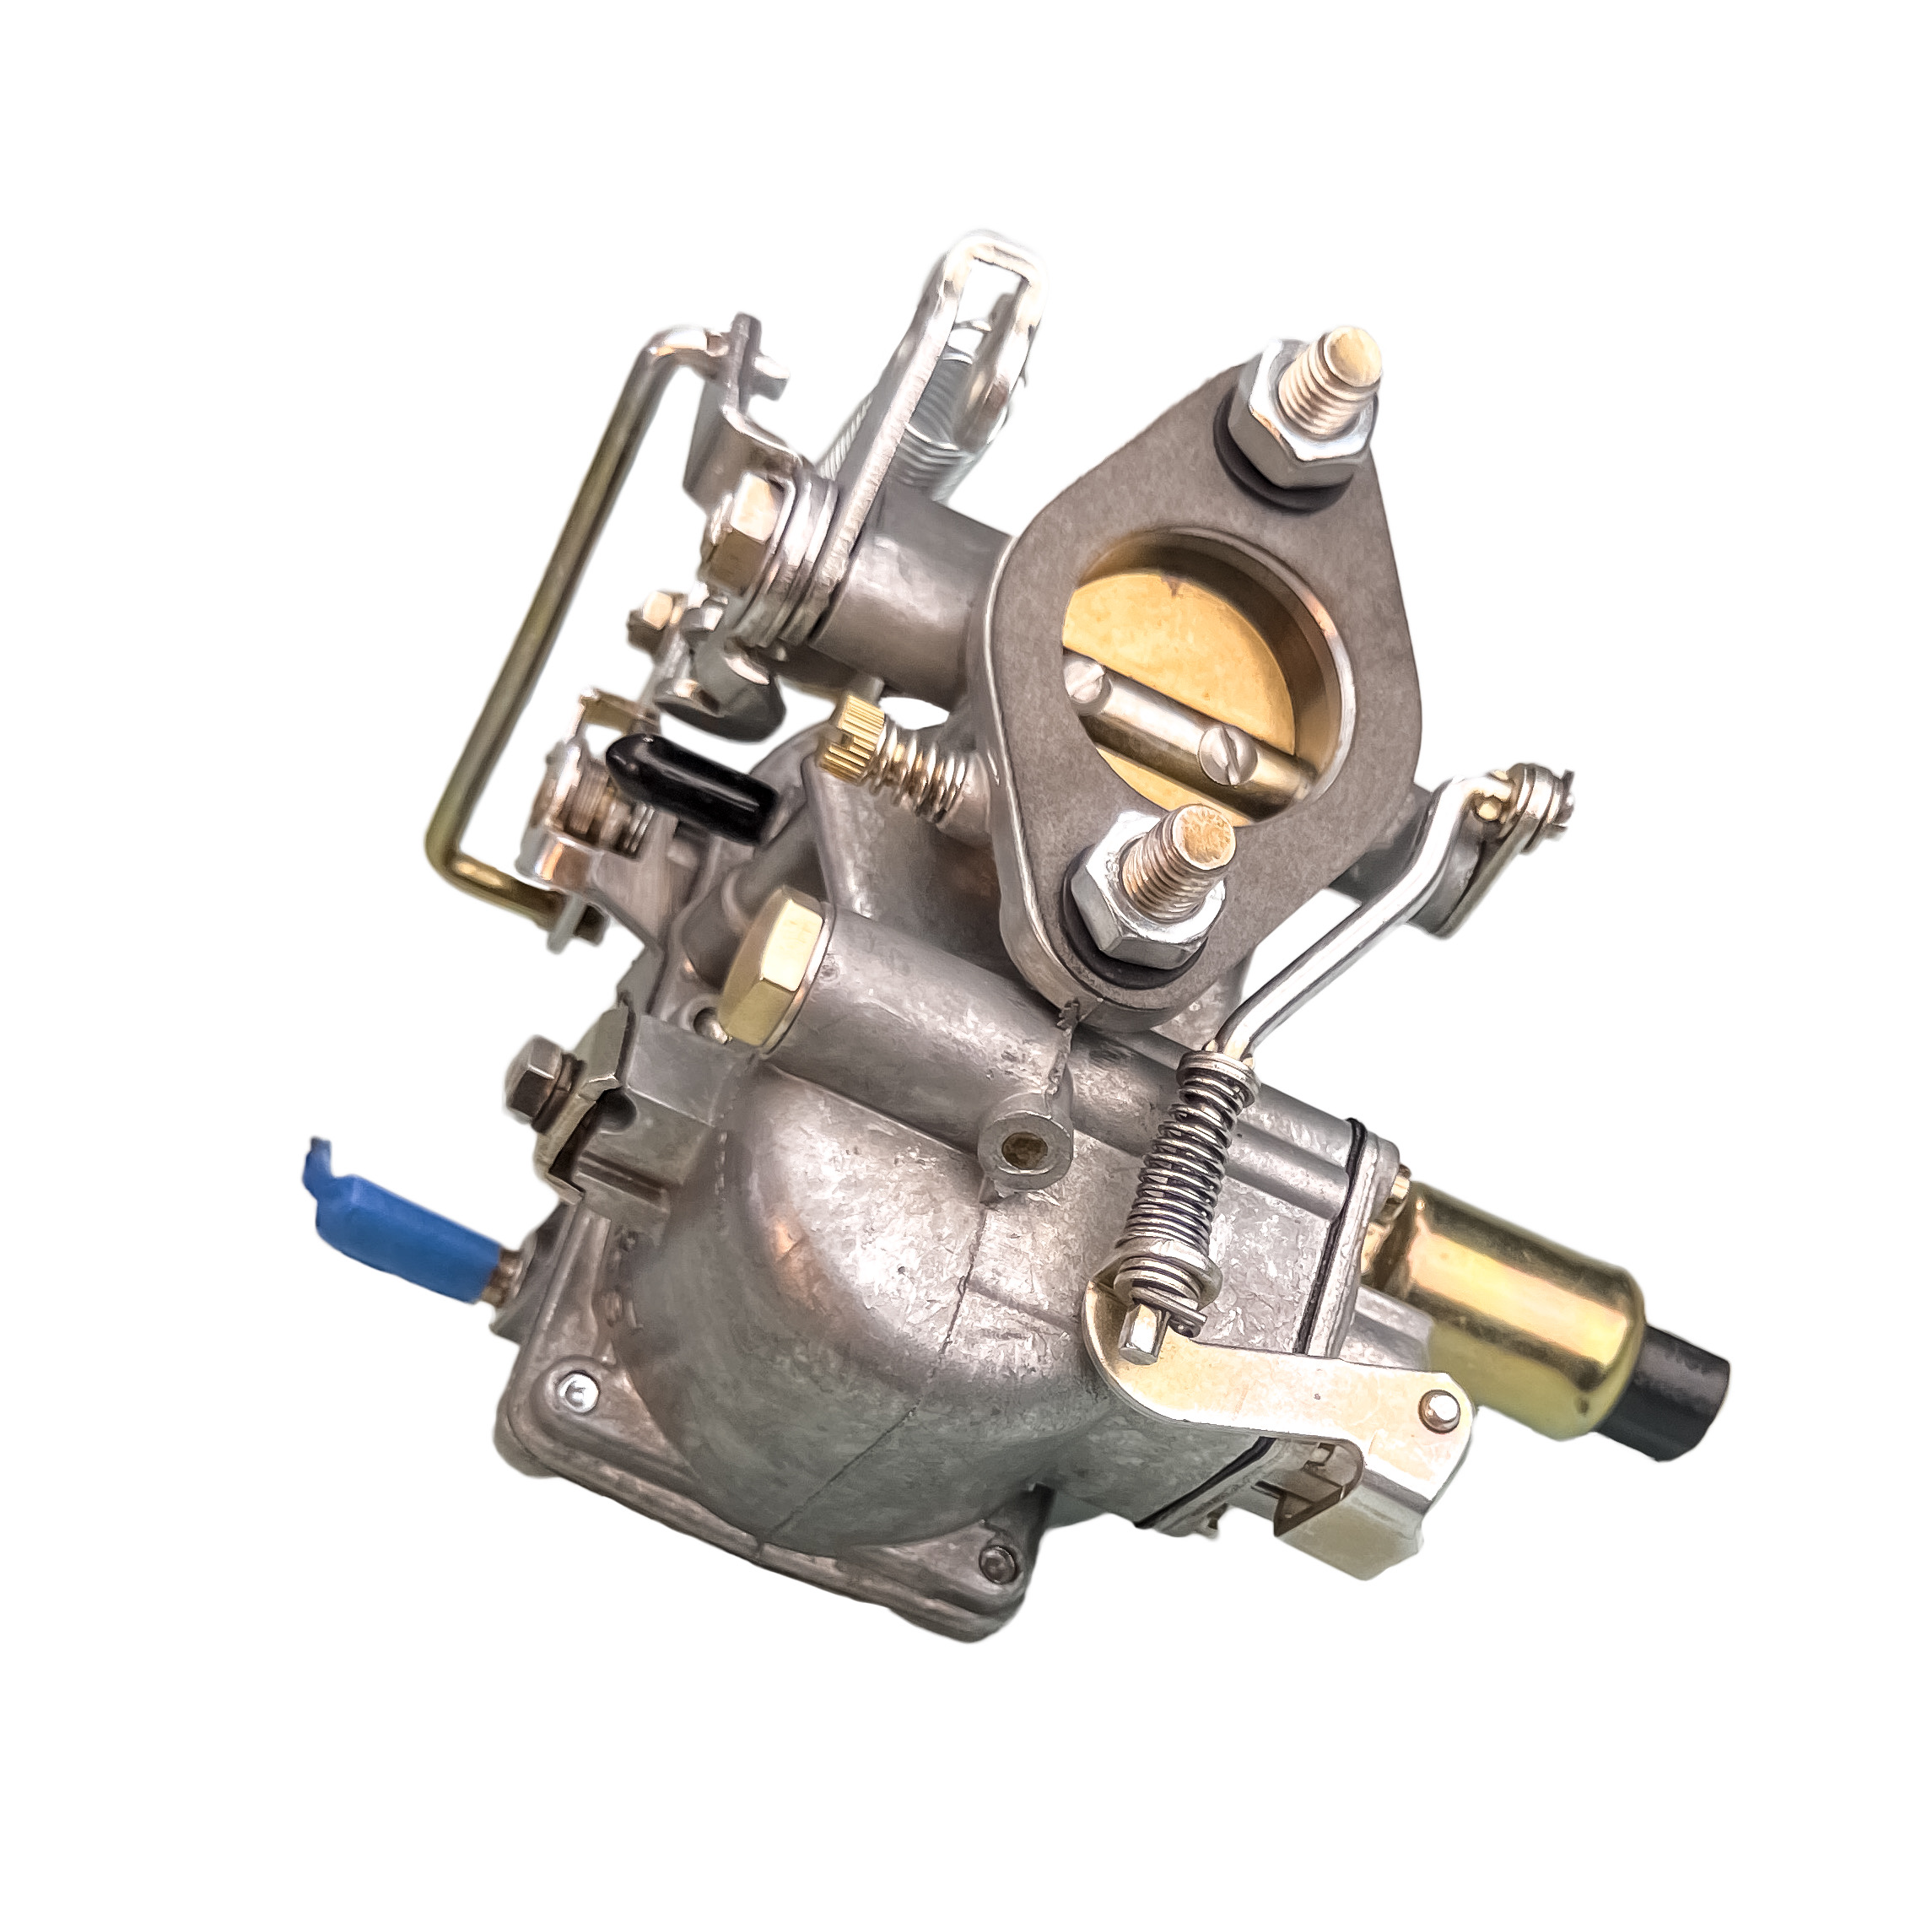 Kit de réparation pour carburateur Coccinelle SOLEX 30-31-34 pict